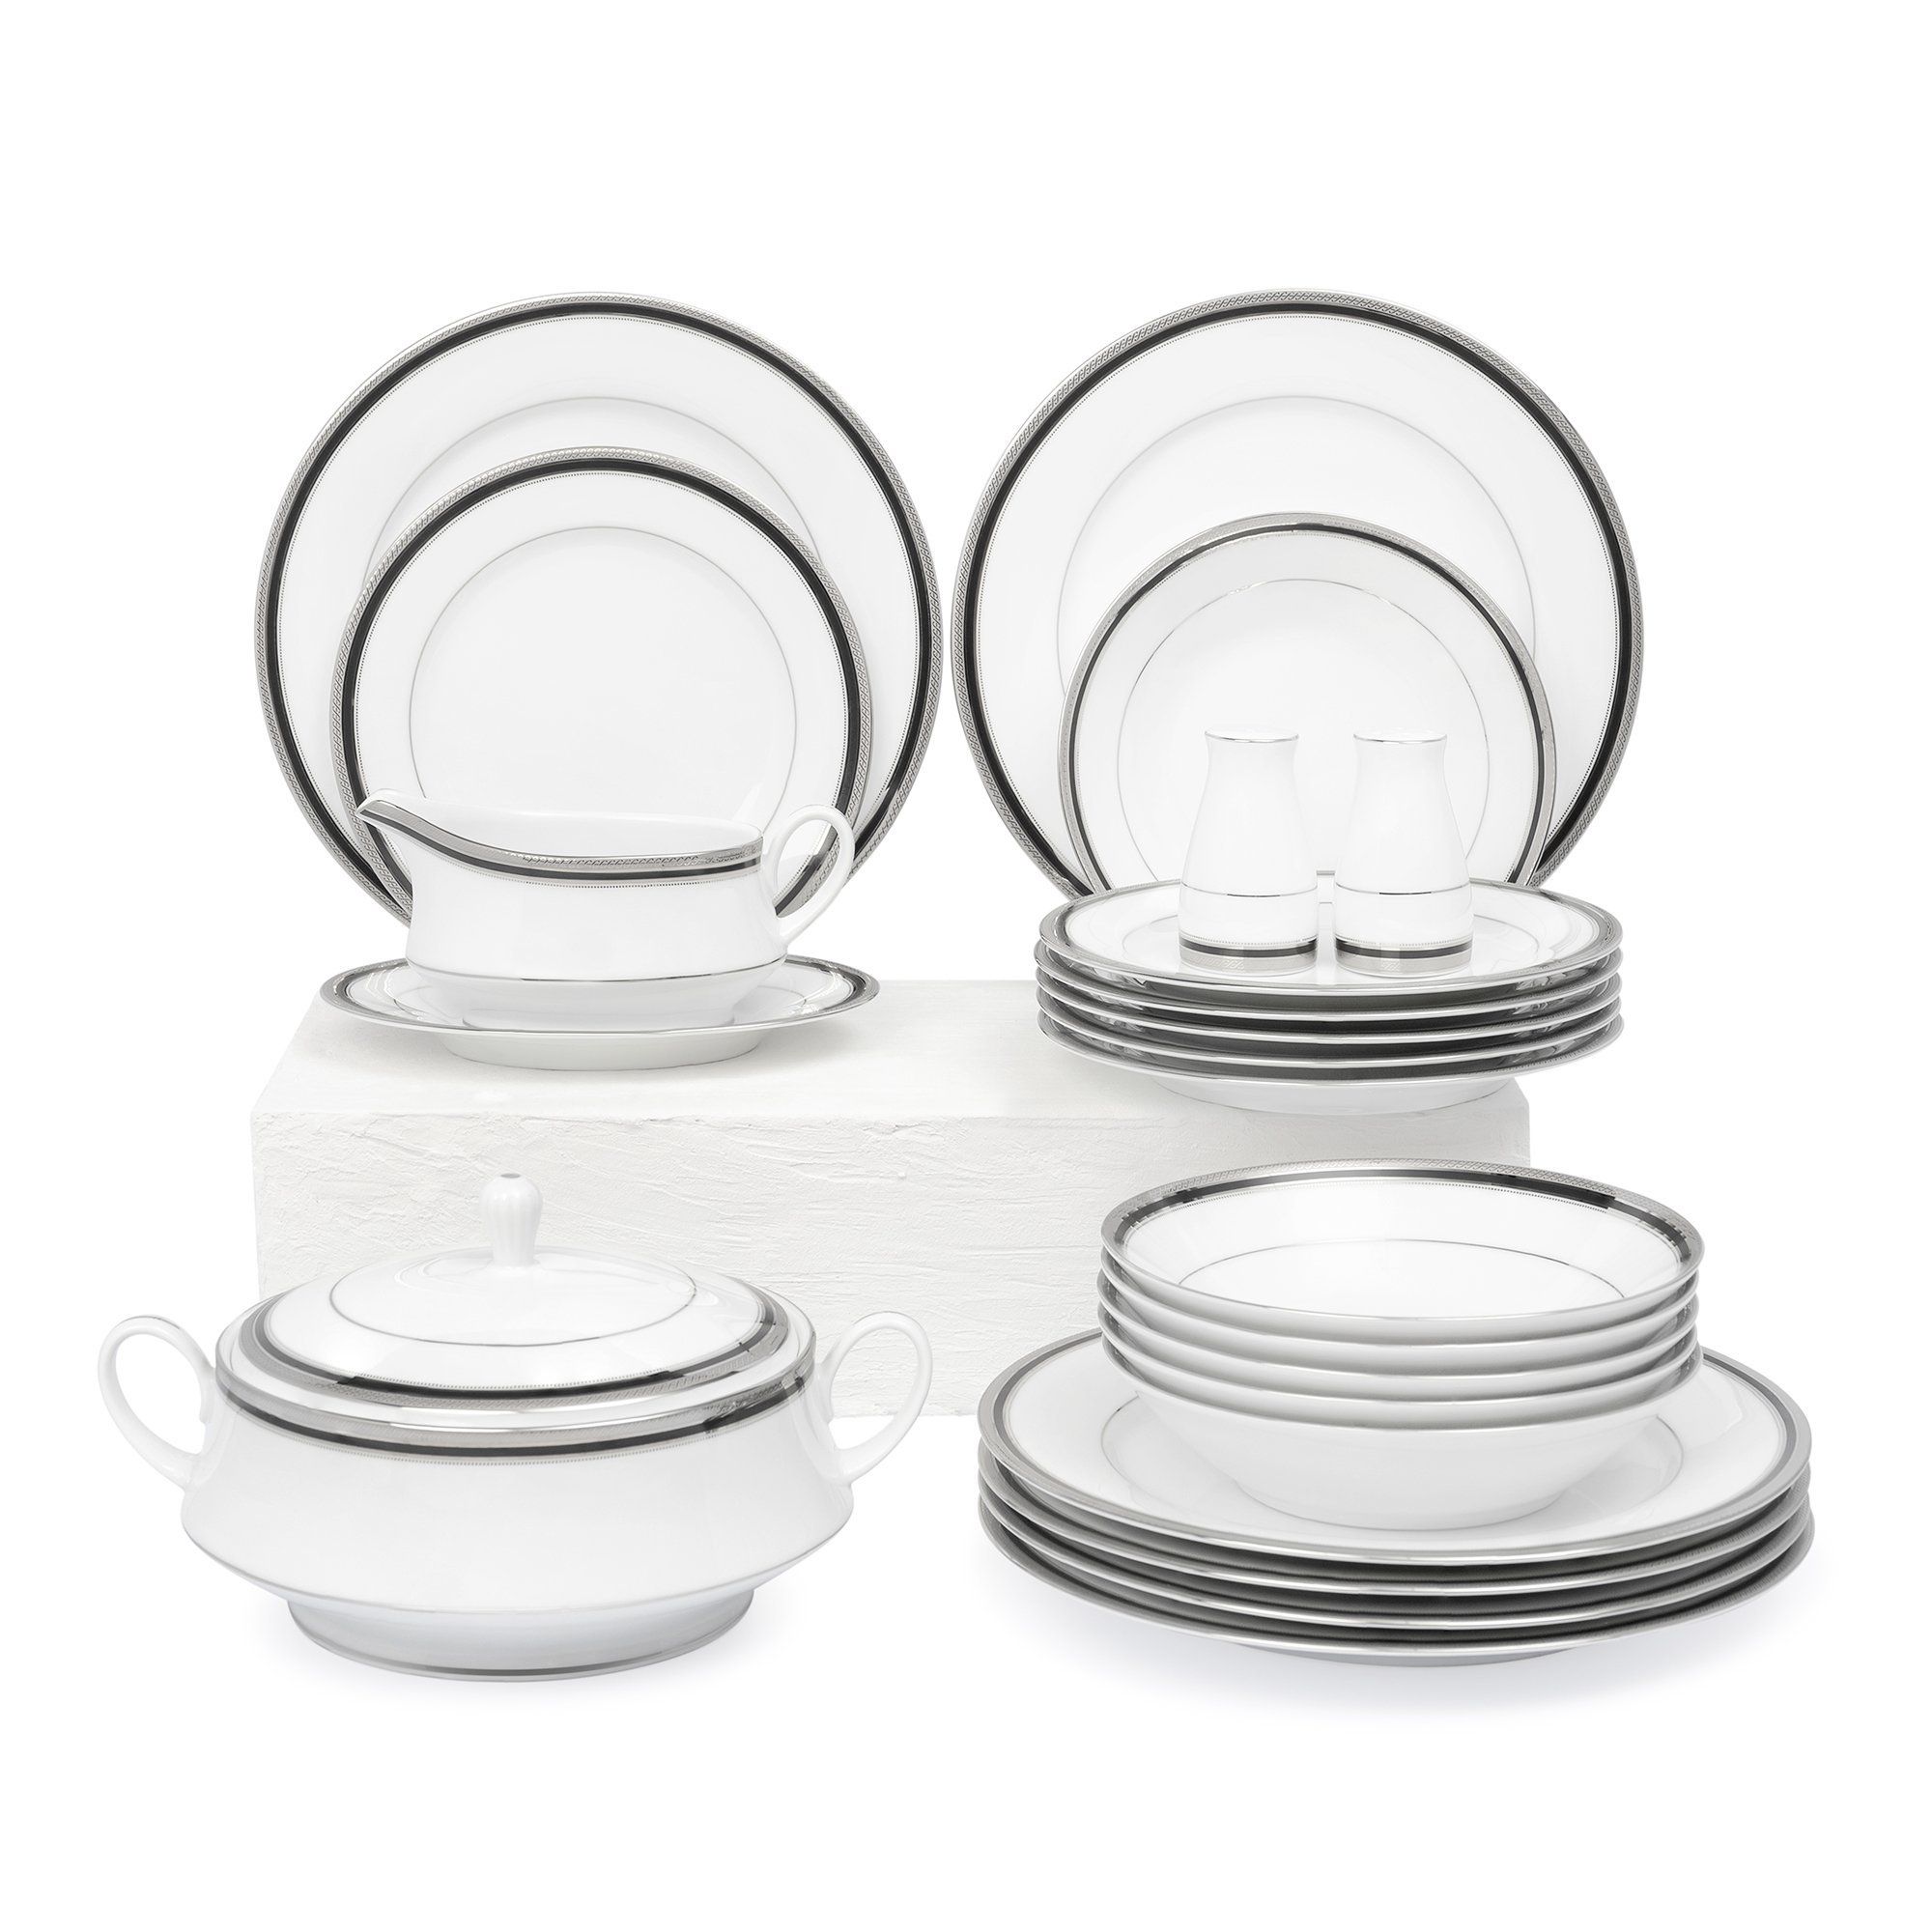  Bộ bàn ăn Châu Âu đầy đủ 22 món sứ trắng | Austin Platinum 4360 